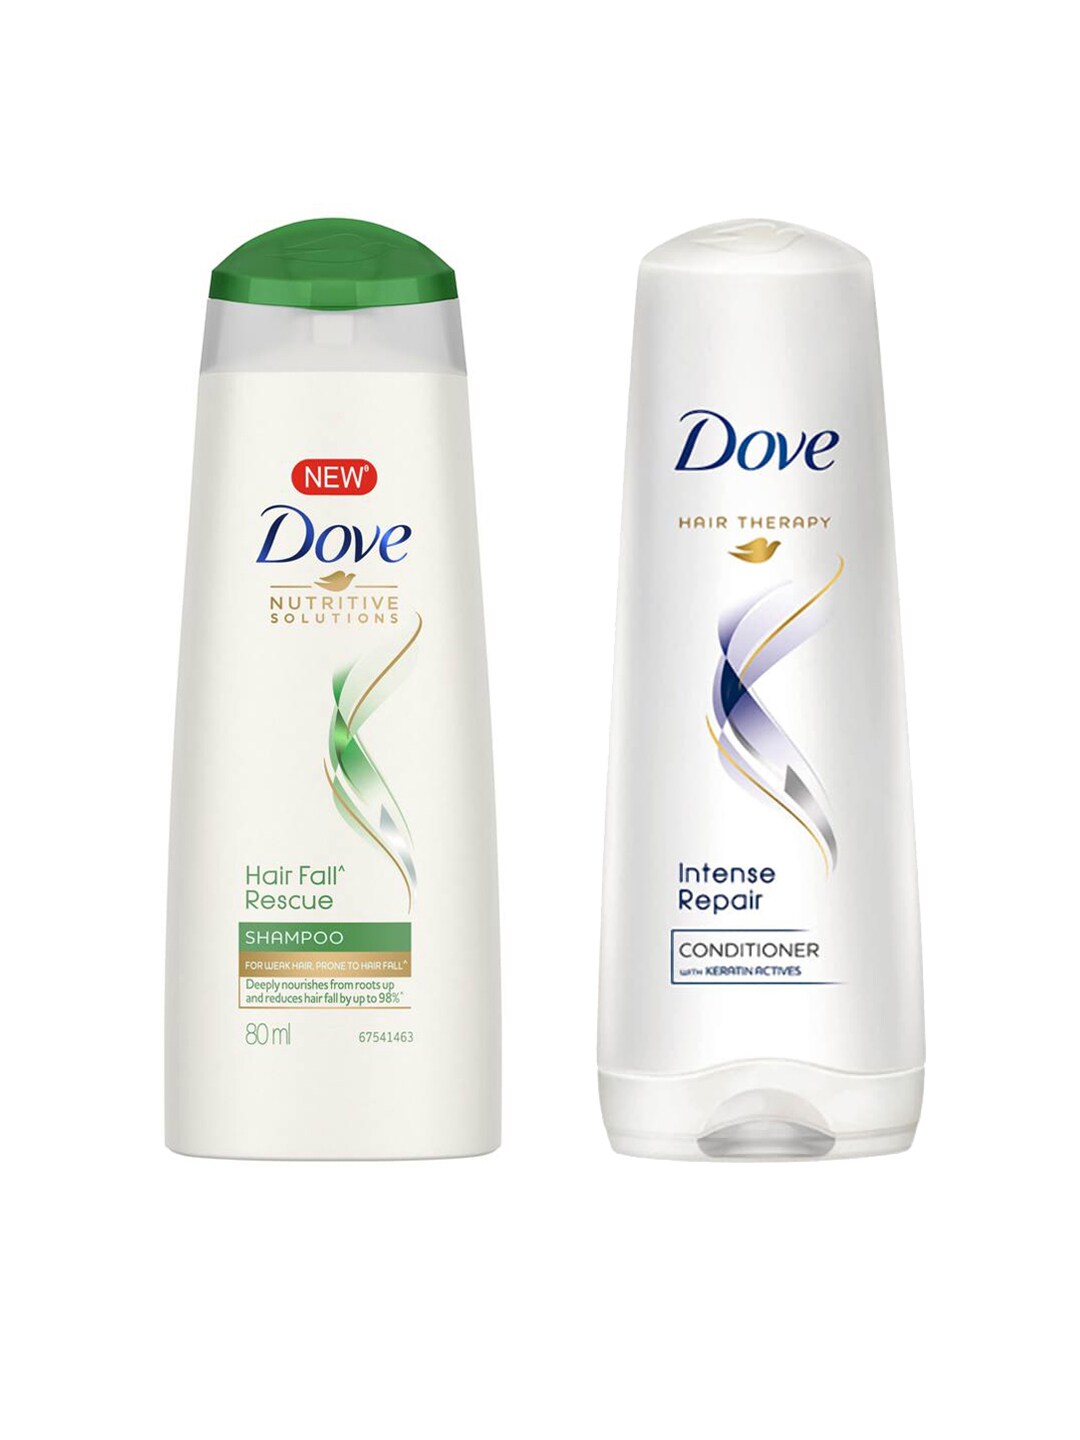 Dove Unisex Intense Repair Conditioner & Unisex Hair Fall Rescue Shampoo Price in India